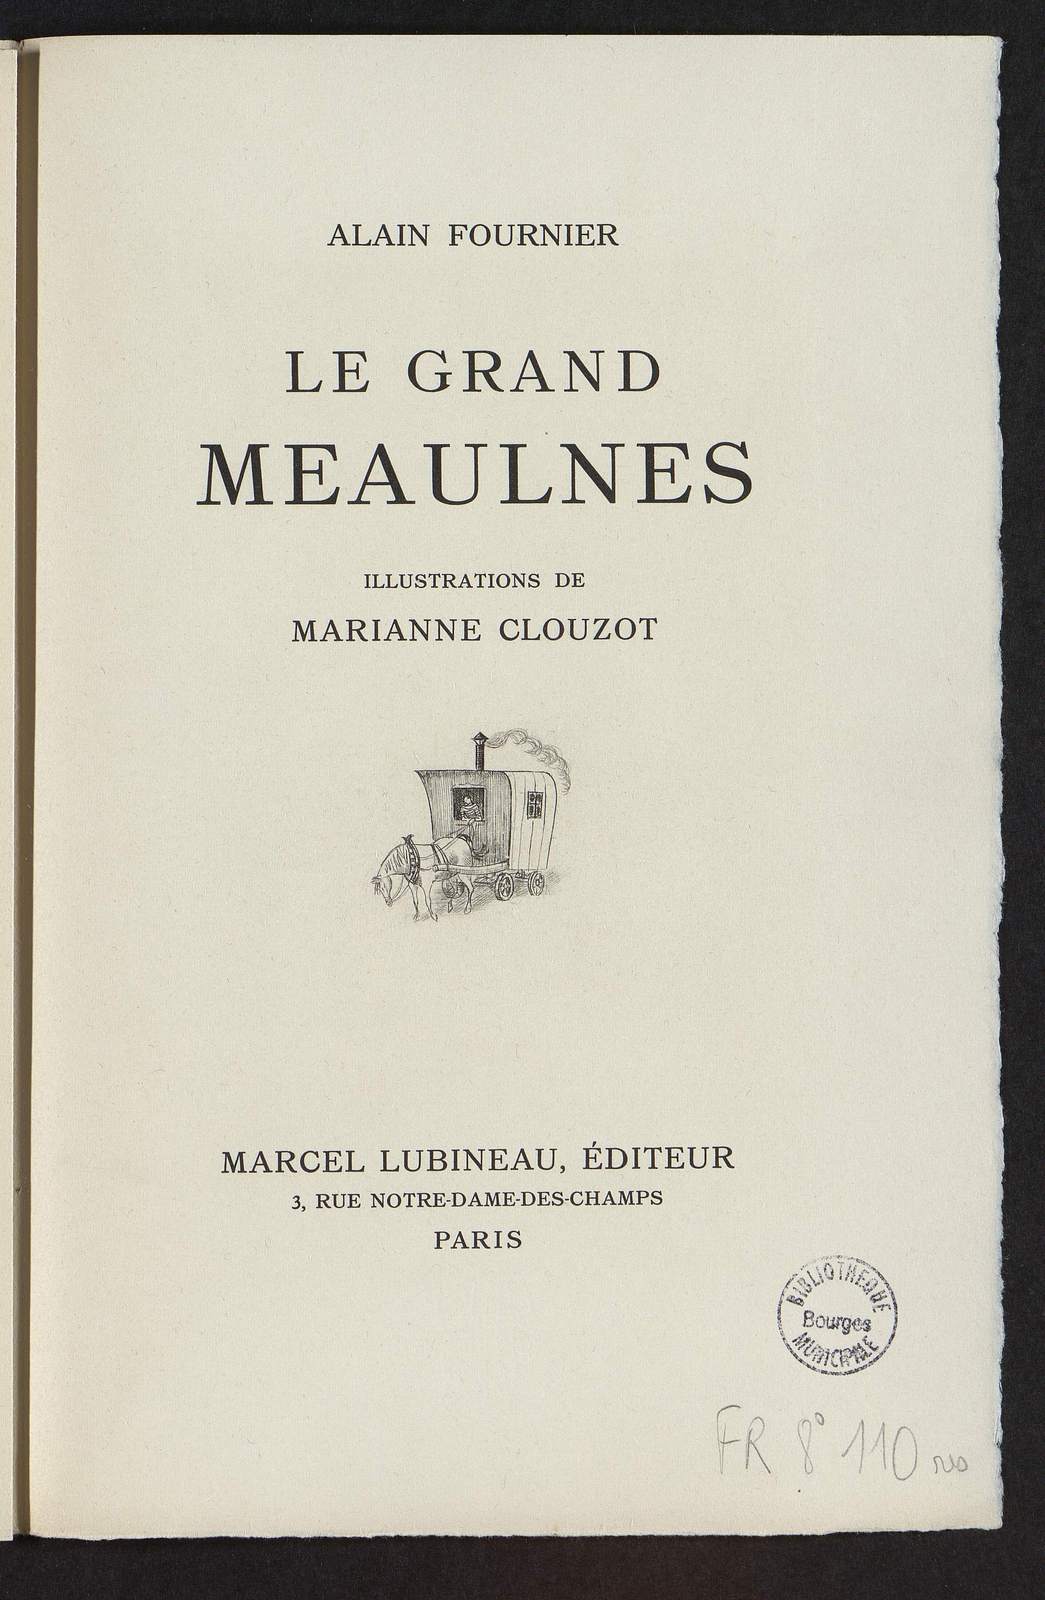 Le Grand Meaulnes, Le cahier de devoirs mensuels, illustré par Marianne Clouzot, Marcel Lubineau éditeur, 1949